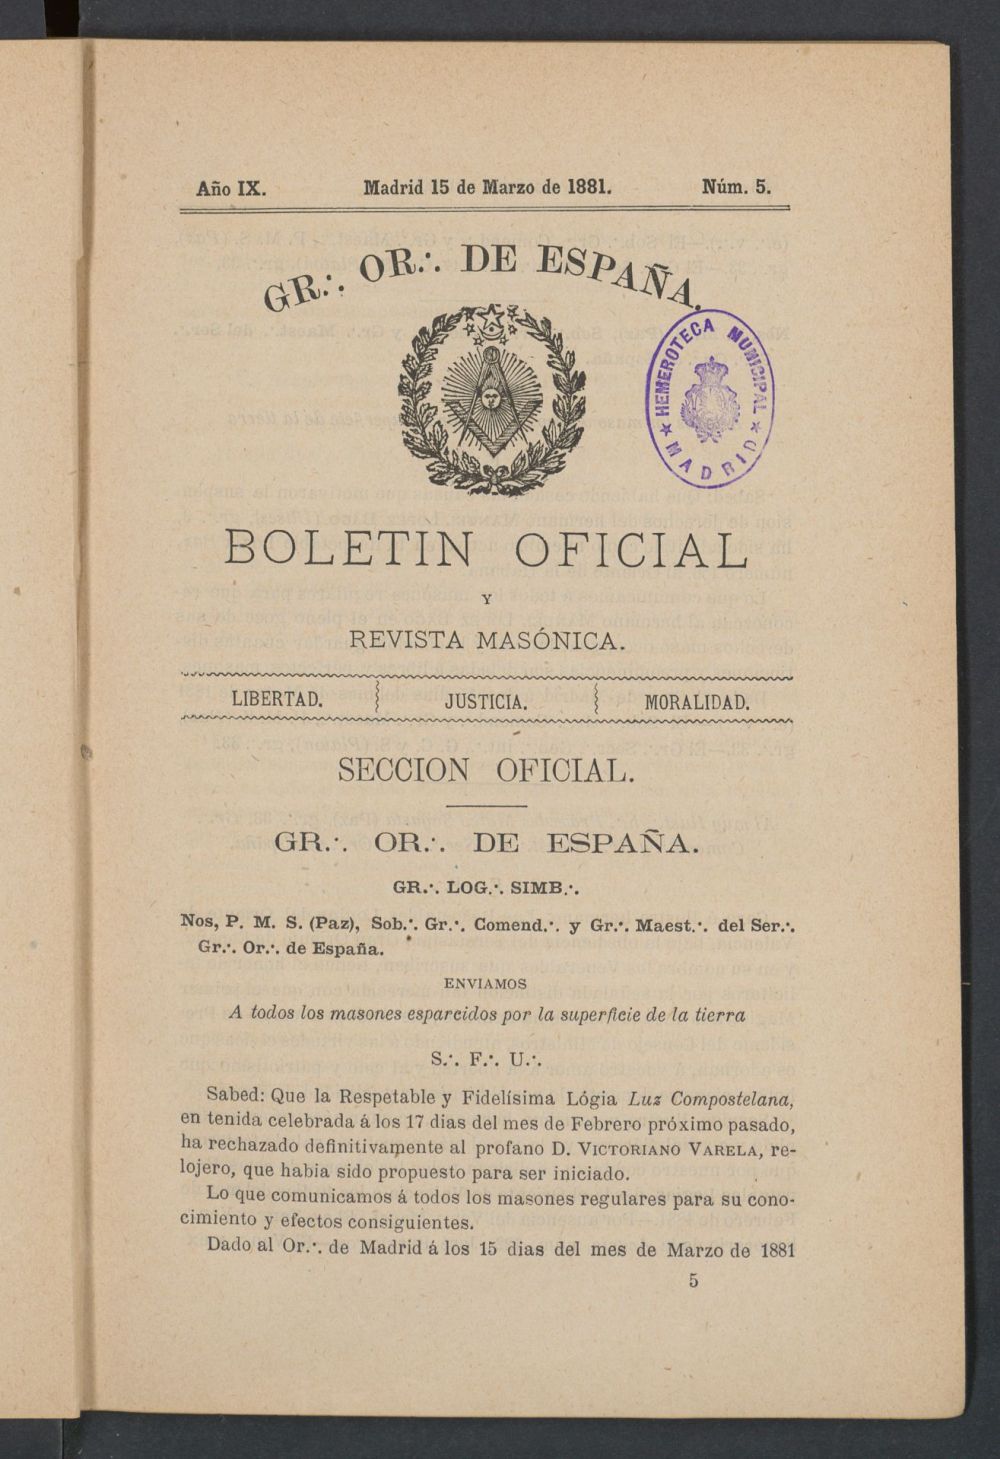 Boletn Oficial del Gran Oriente de Espaa del 15 de marzo de 1881. N 5